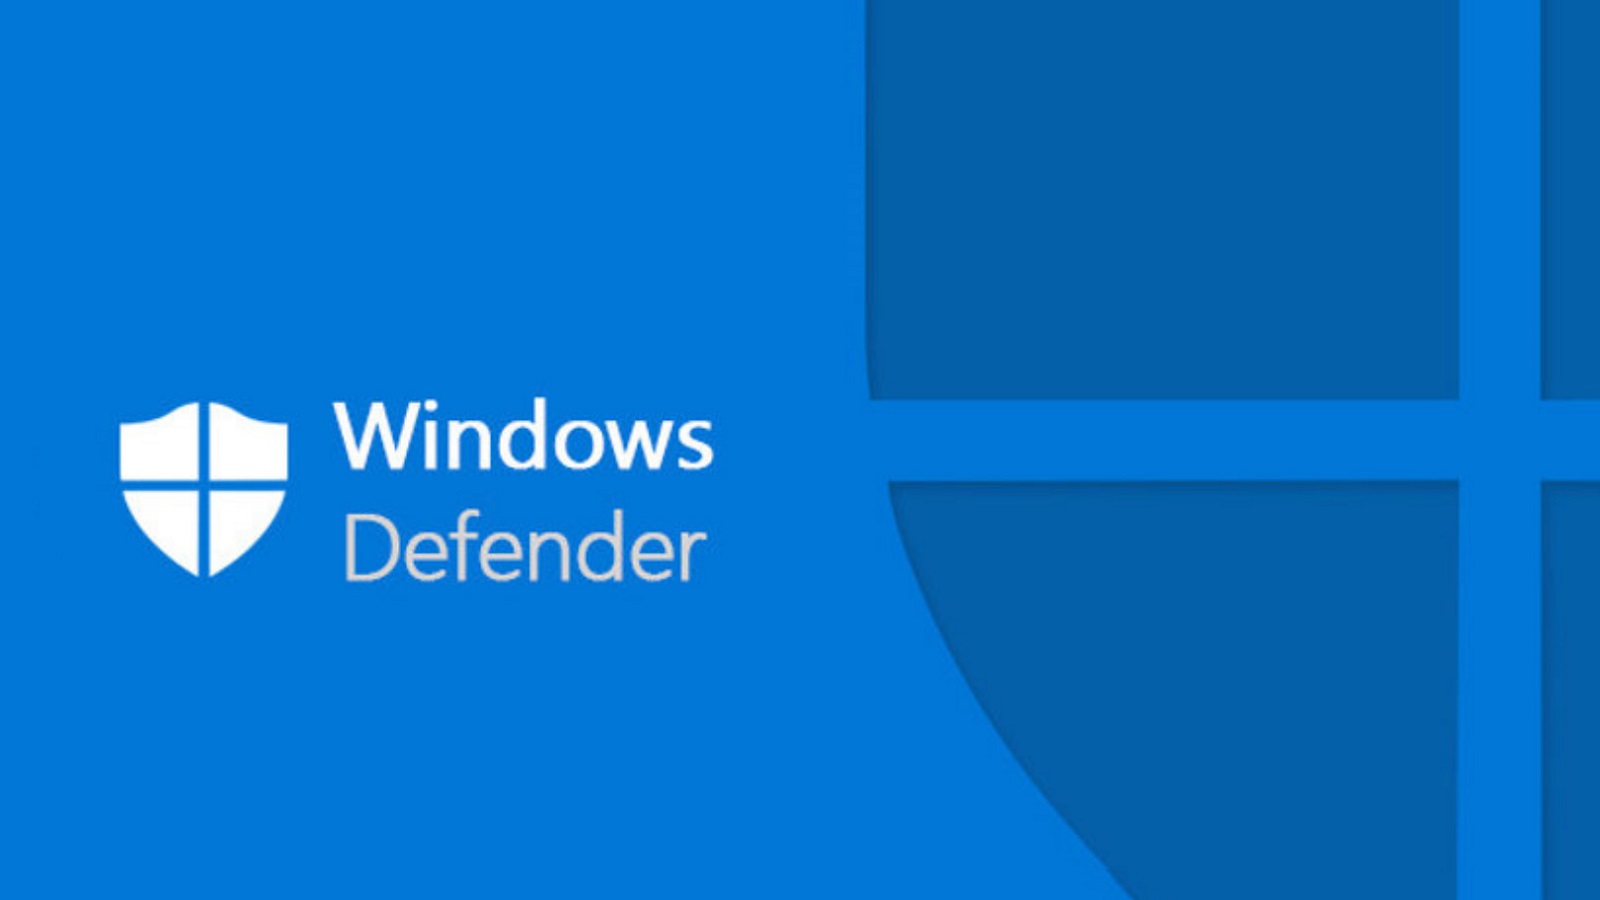 Windows Defender affecterait les performances système, voici une solution